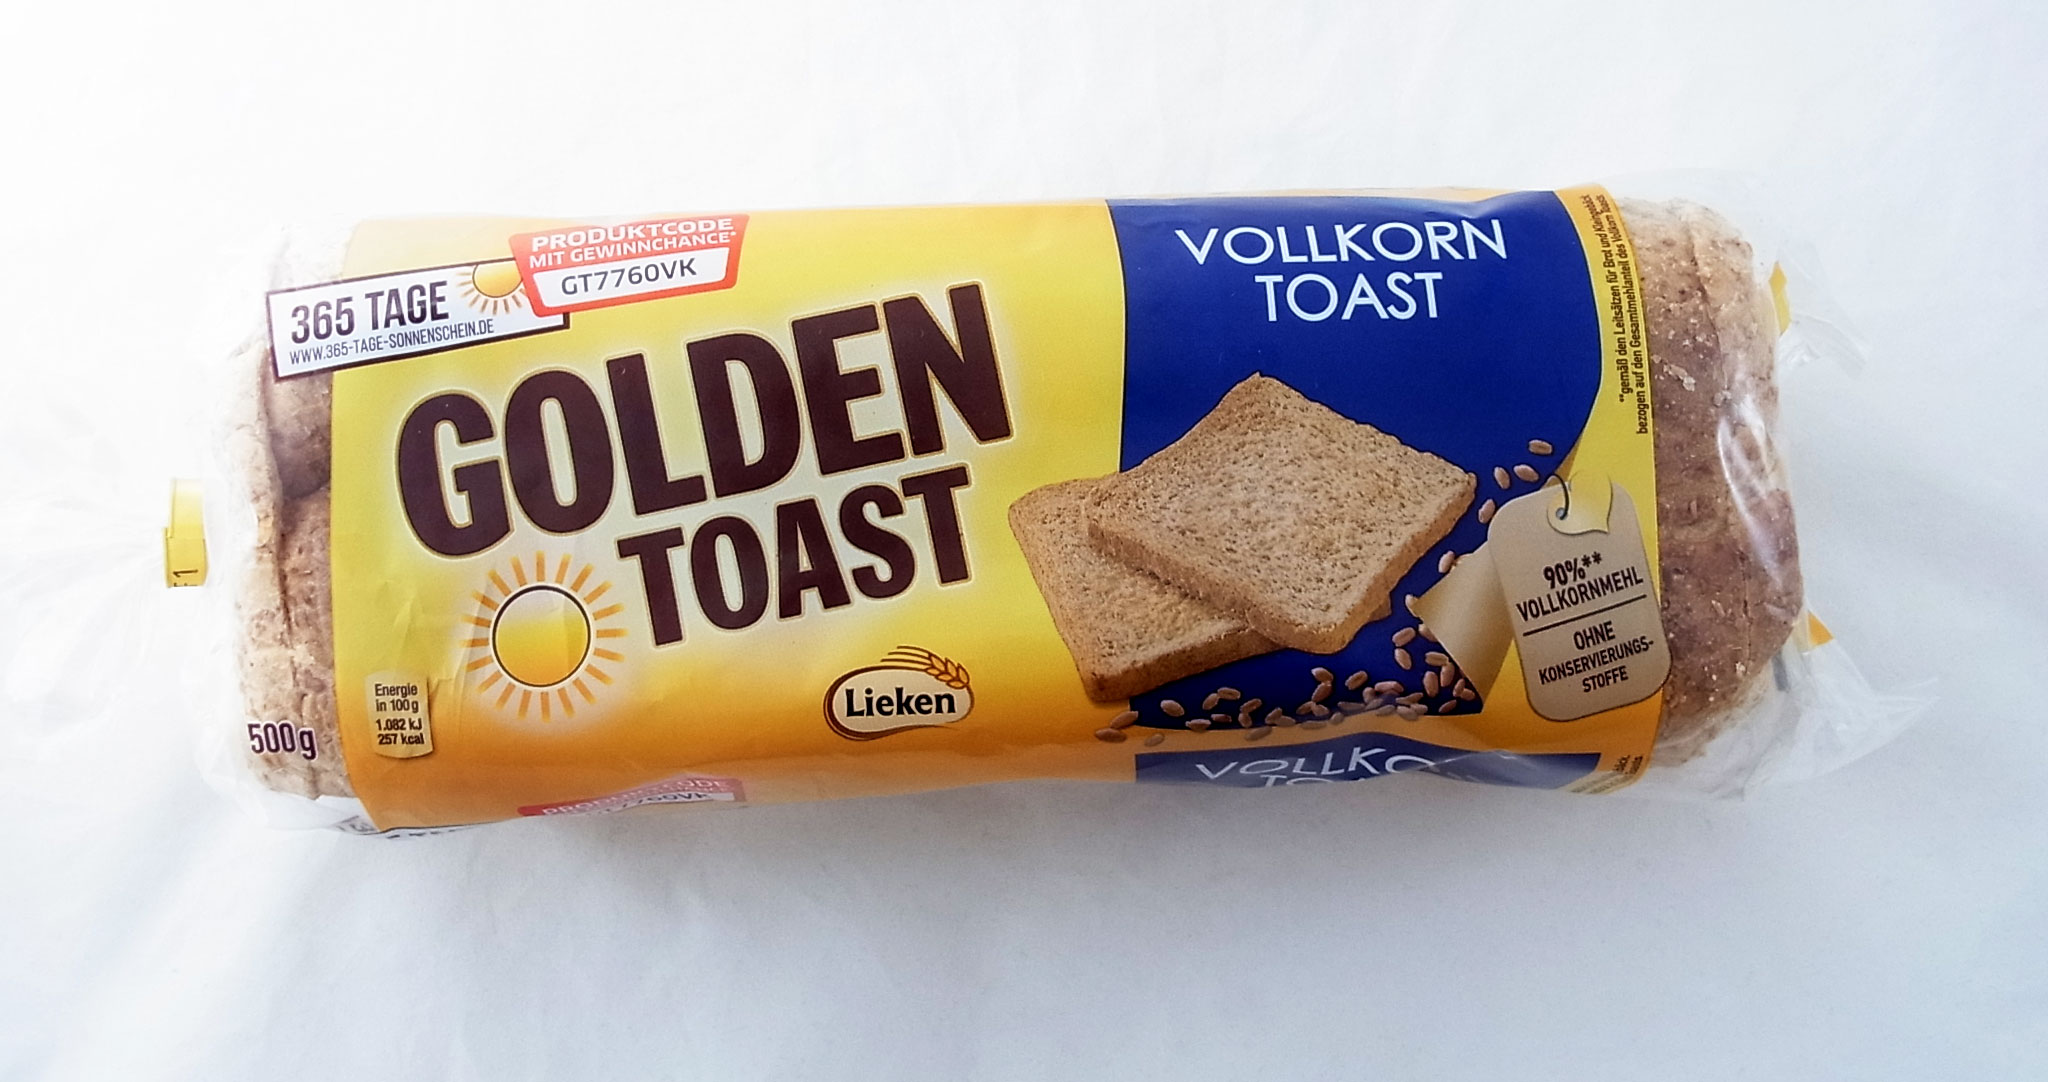 Lieken Golden Toast Vollkorntoast | Lebensmittelklarheit